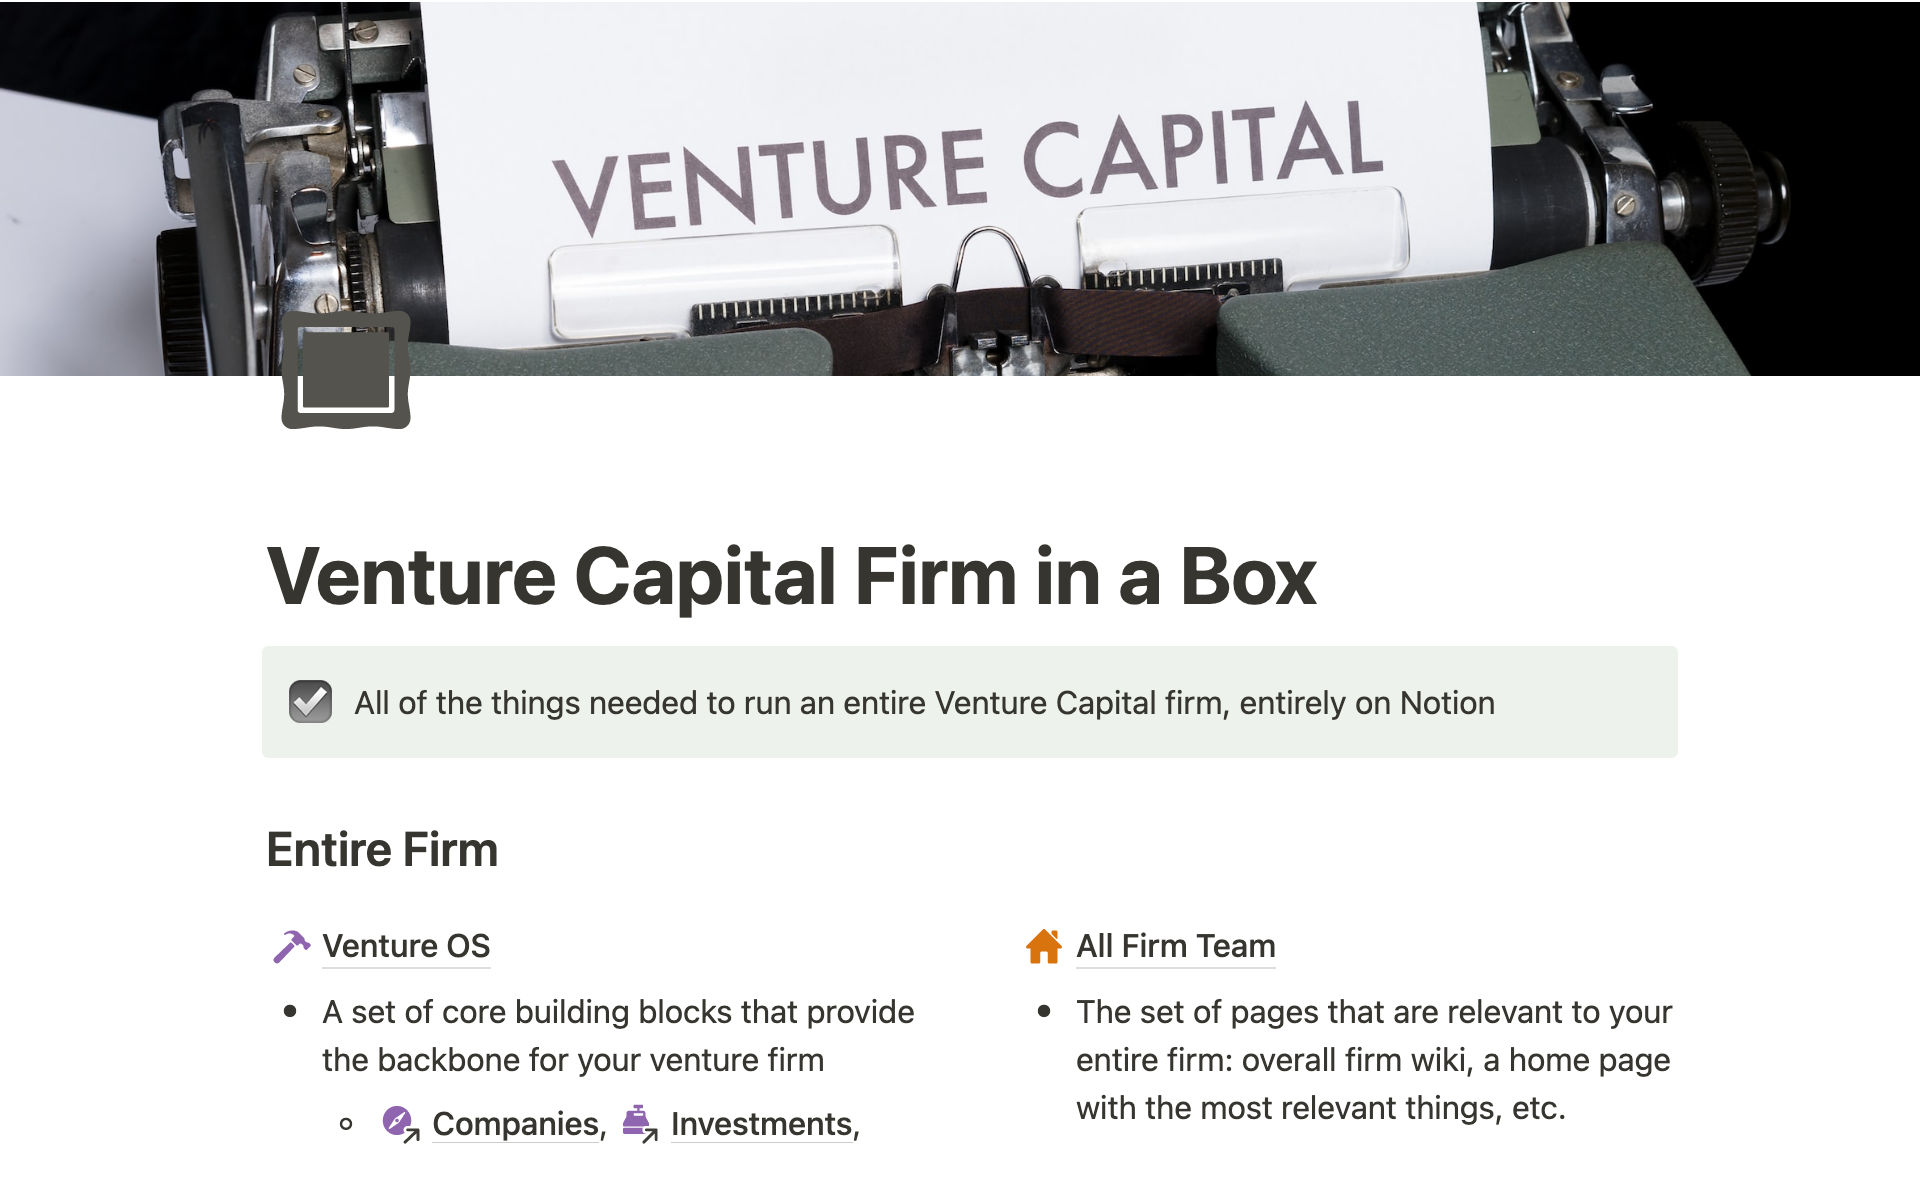 Uma prévia do modelo para Venture Capital Firm in a Box